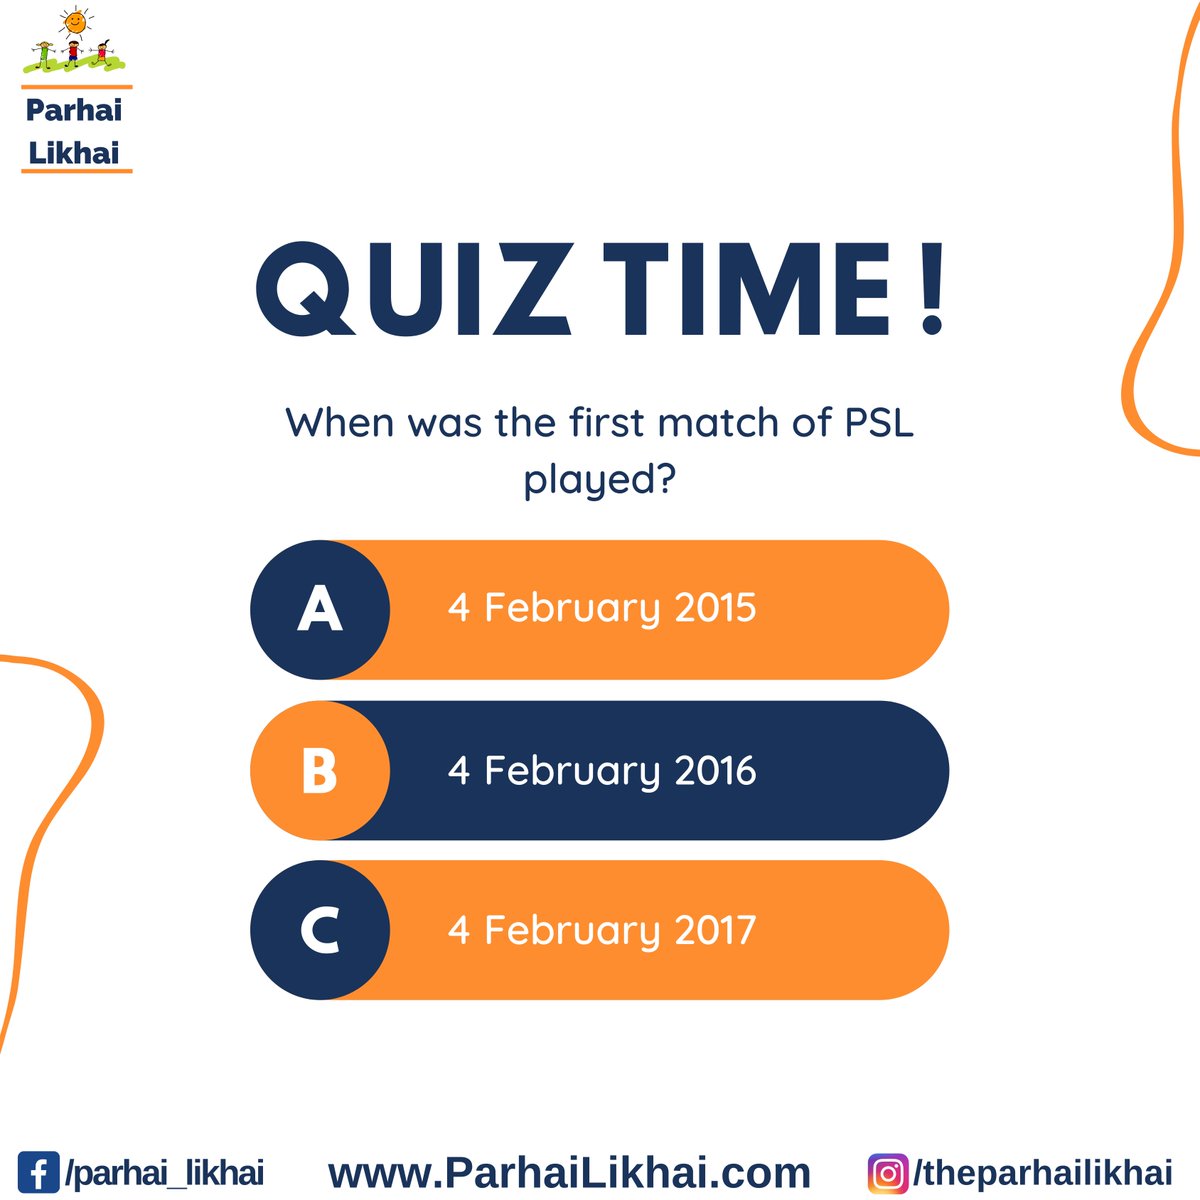 Let us know your answer in the comment below! 🏏
#ParhaiLikhai #education #TuesdayChallenge #PSL #PSL2023 #quiz #QuizTime